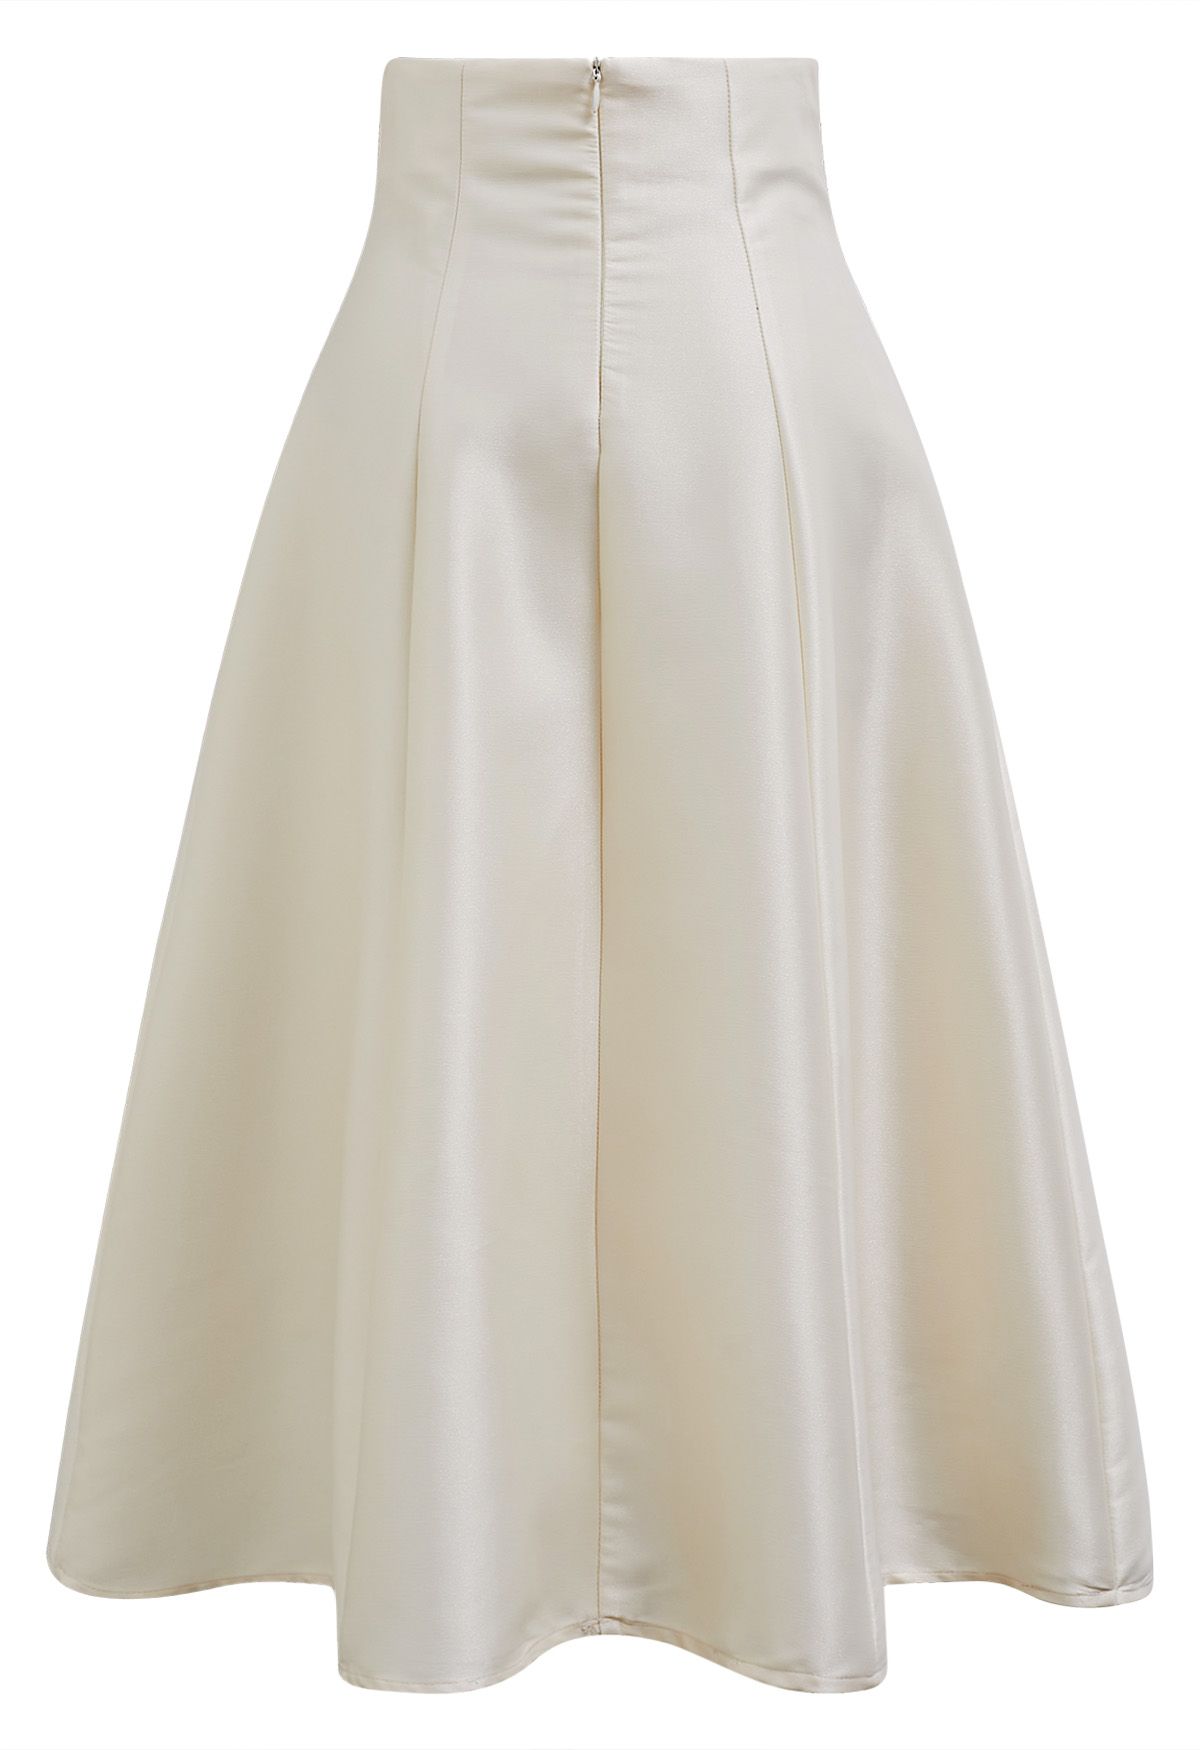 Falda midi brillante de corte A en color crema